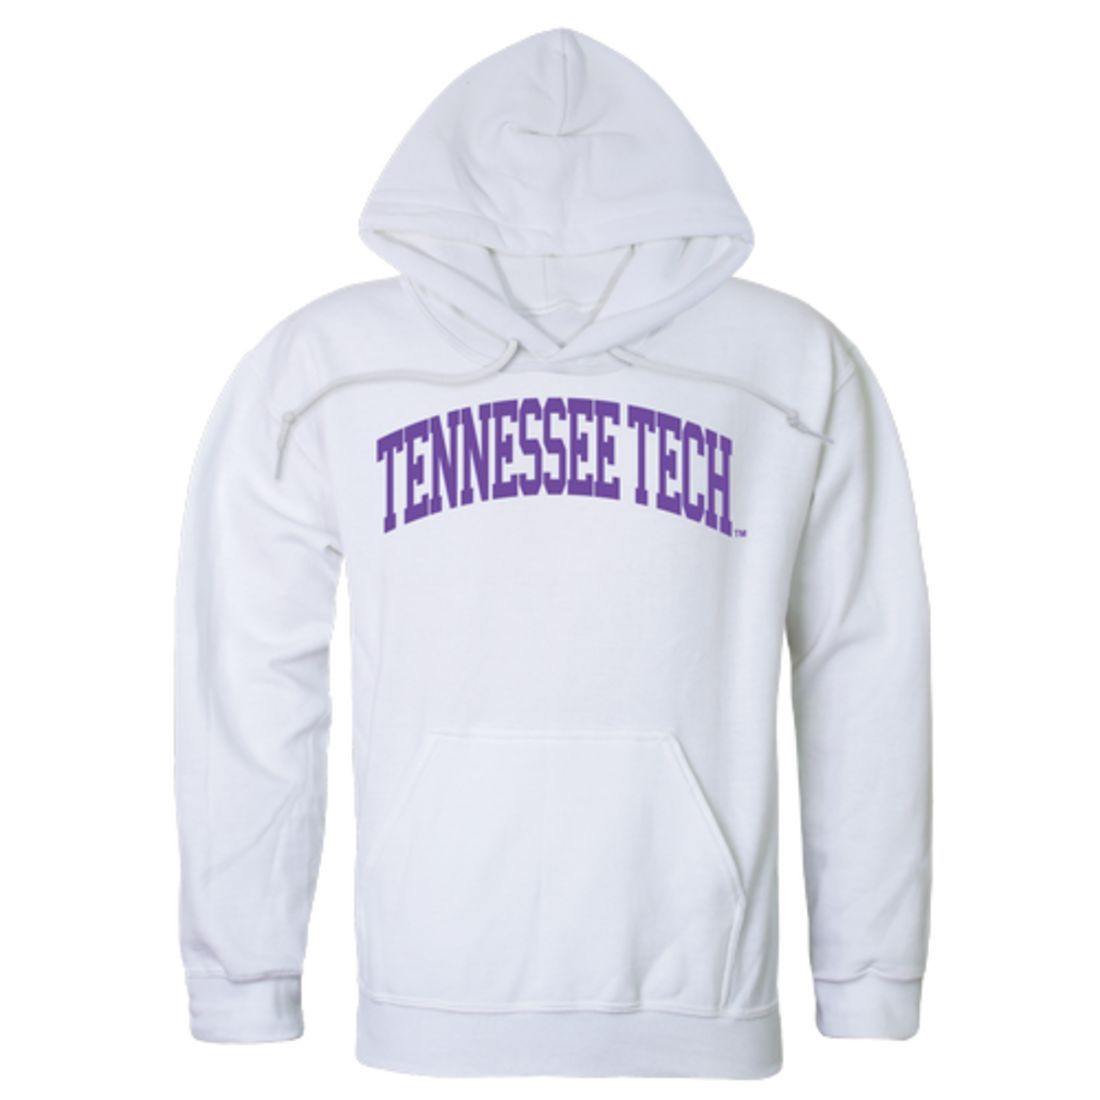 TTU Tennessee Tech University Golden Eagles College Hoodie Sweatshirt White-Campus-Wardrobe